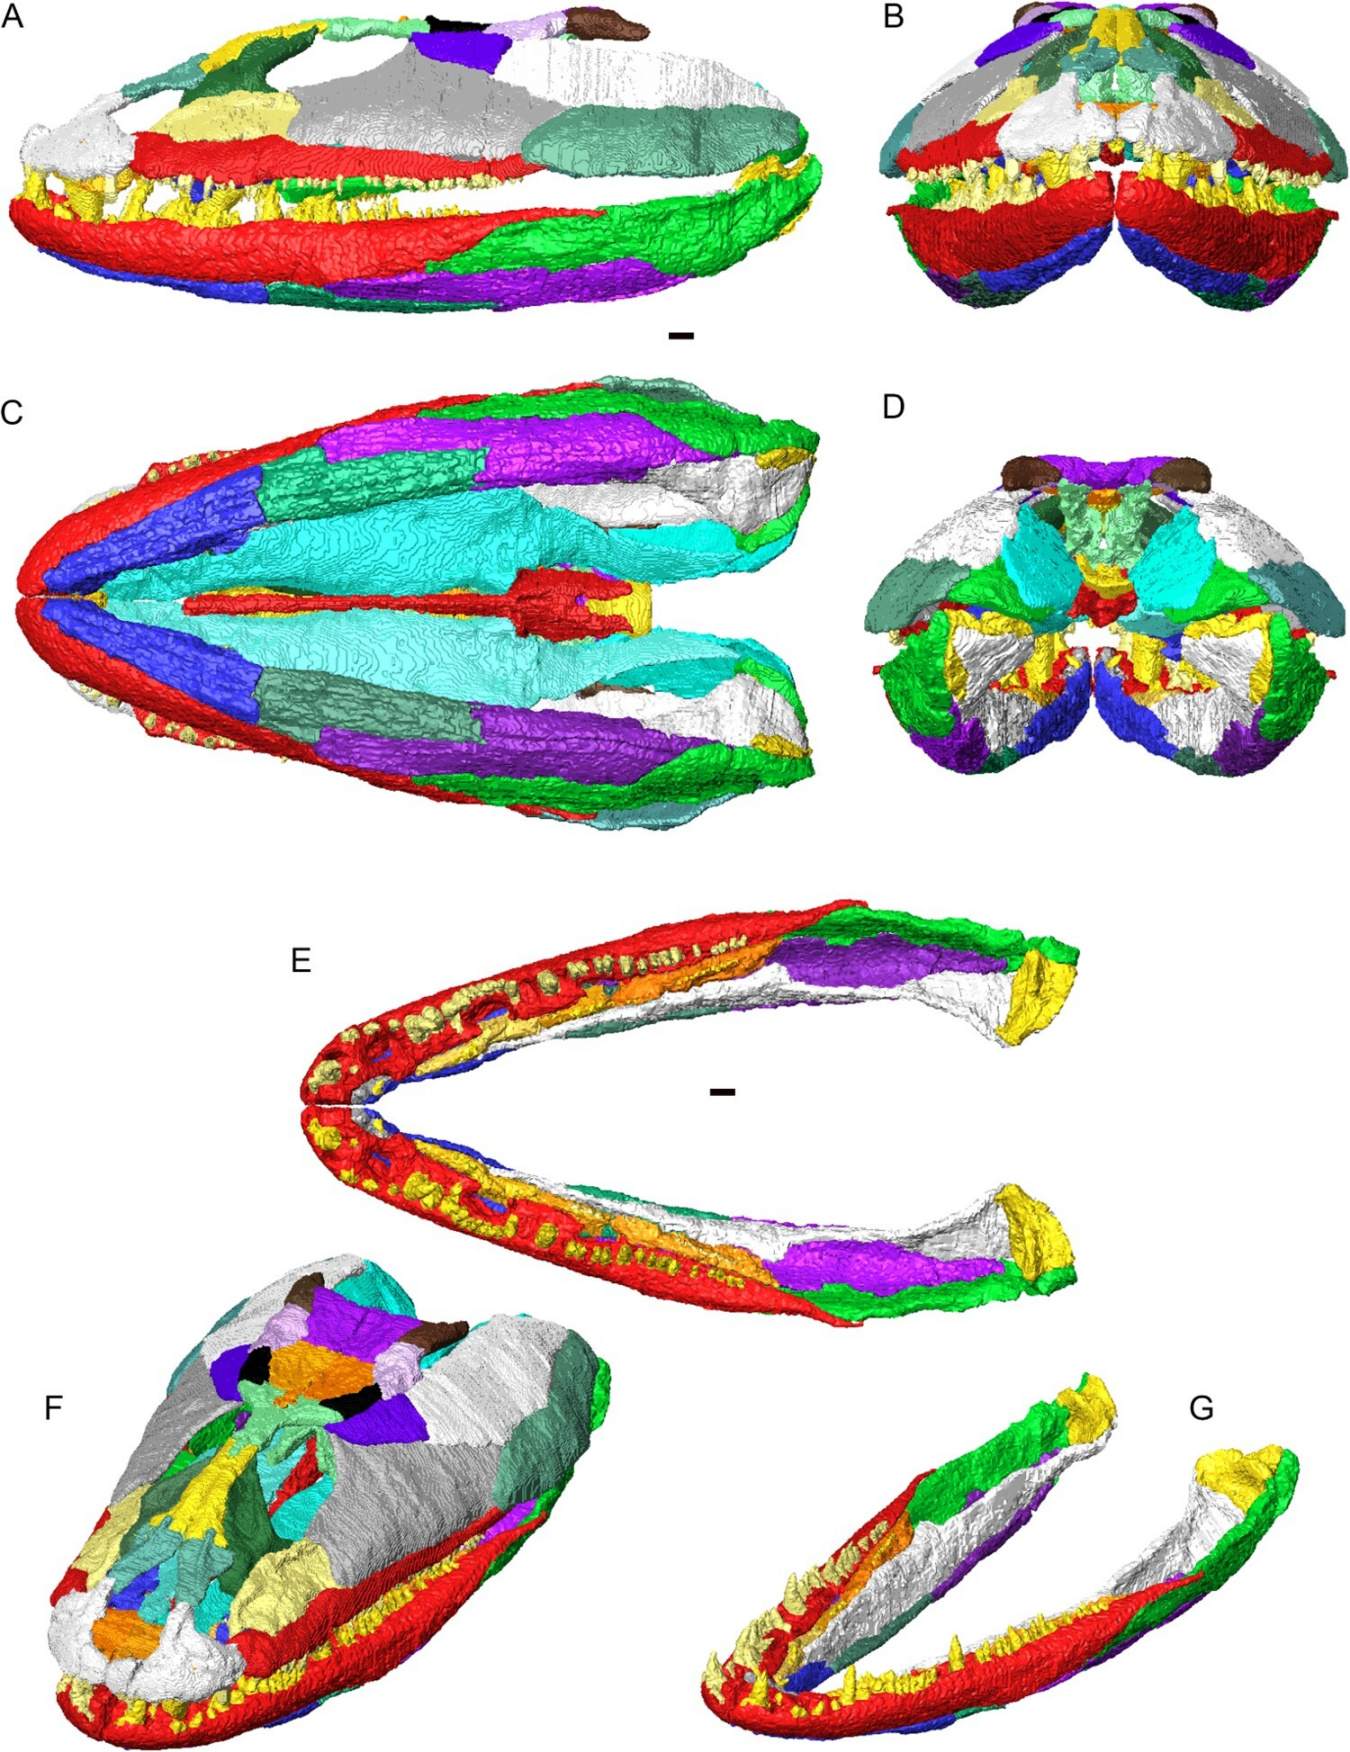 کرینیم کی 3D تعمیر نو اور Crassigyrinus scoticus کے نچلے جبڑے انفرادی ہڈیاں مختلف رنگوں میں دکھائی دیتی ہیں۔ A، بائیں طرف کا منظر؛ B، پچھلے منظر؛ سی، وینٹرل ویو؛ ڈی، پیچھے کا منظر؛ ای، ڈورسل ویو میں نچلے جبڑے (کوئی کرینیم نہیں)؛ F, cranium اور نچلا جبڑا ڈورسولٹرل ترچھا منظر میں؛ جی، ڈورسولٹرل ترچھا منظر میں نچلے جبڑے کو بیان کیا۔